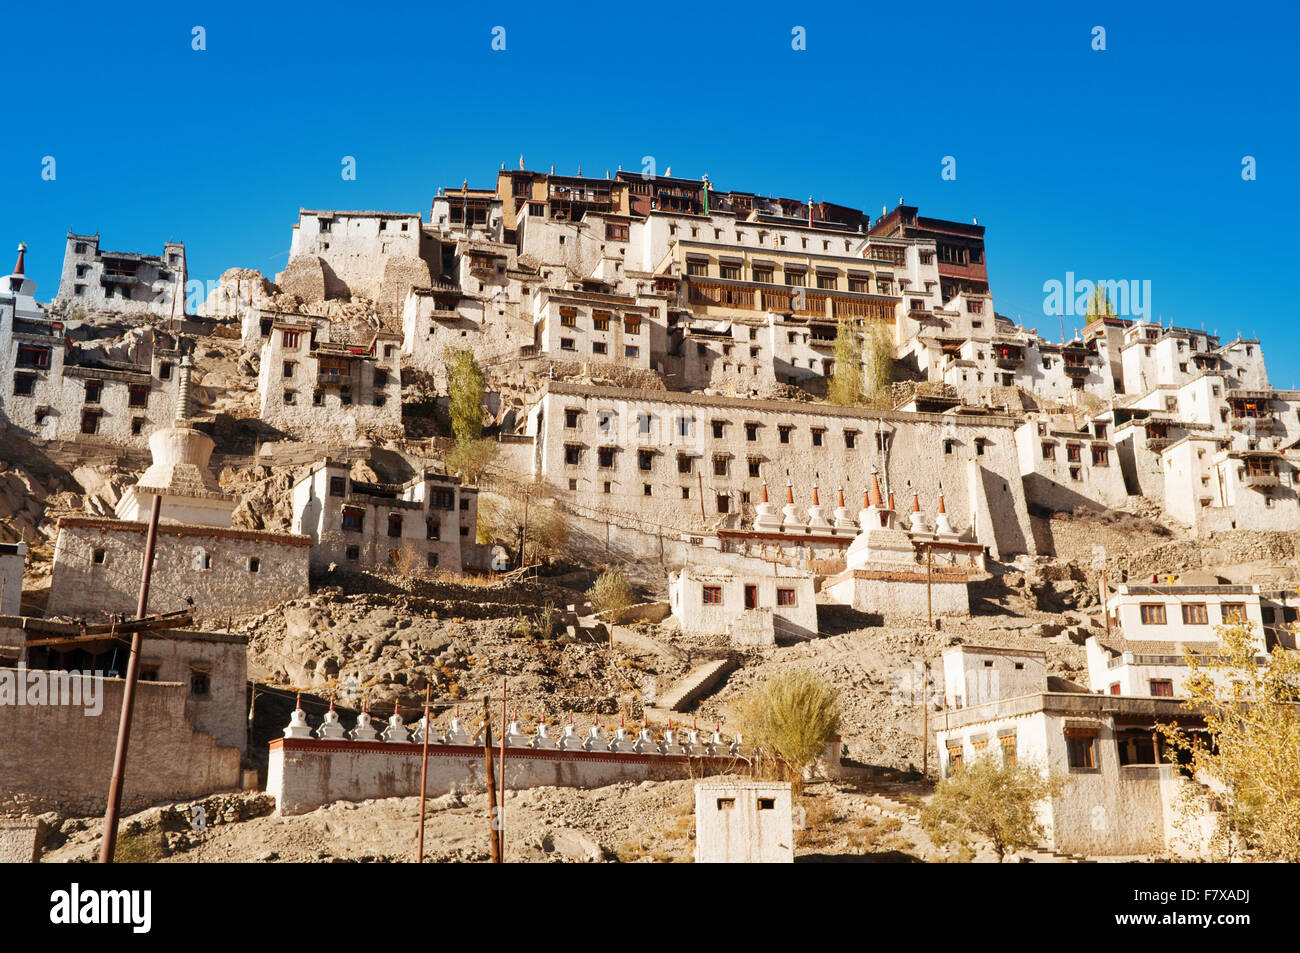 Thikse Monastery, le monastère bouddhiste tibétain de l'école Gelugpa chapeau jaune. Le Ladakh, Inde Banque D'Images